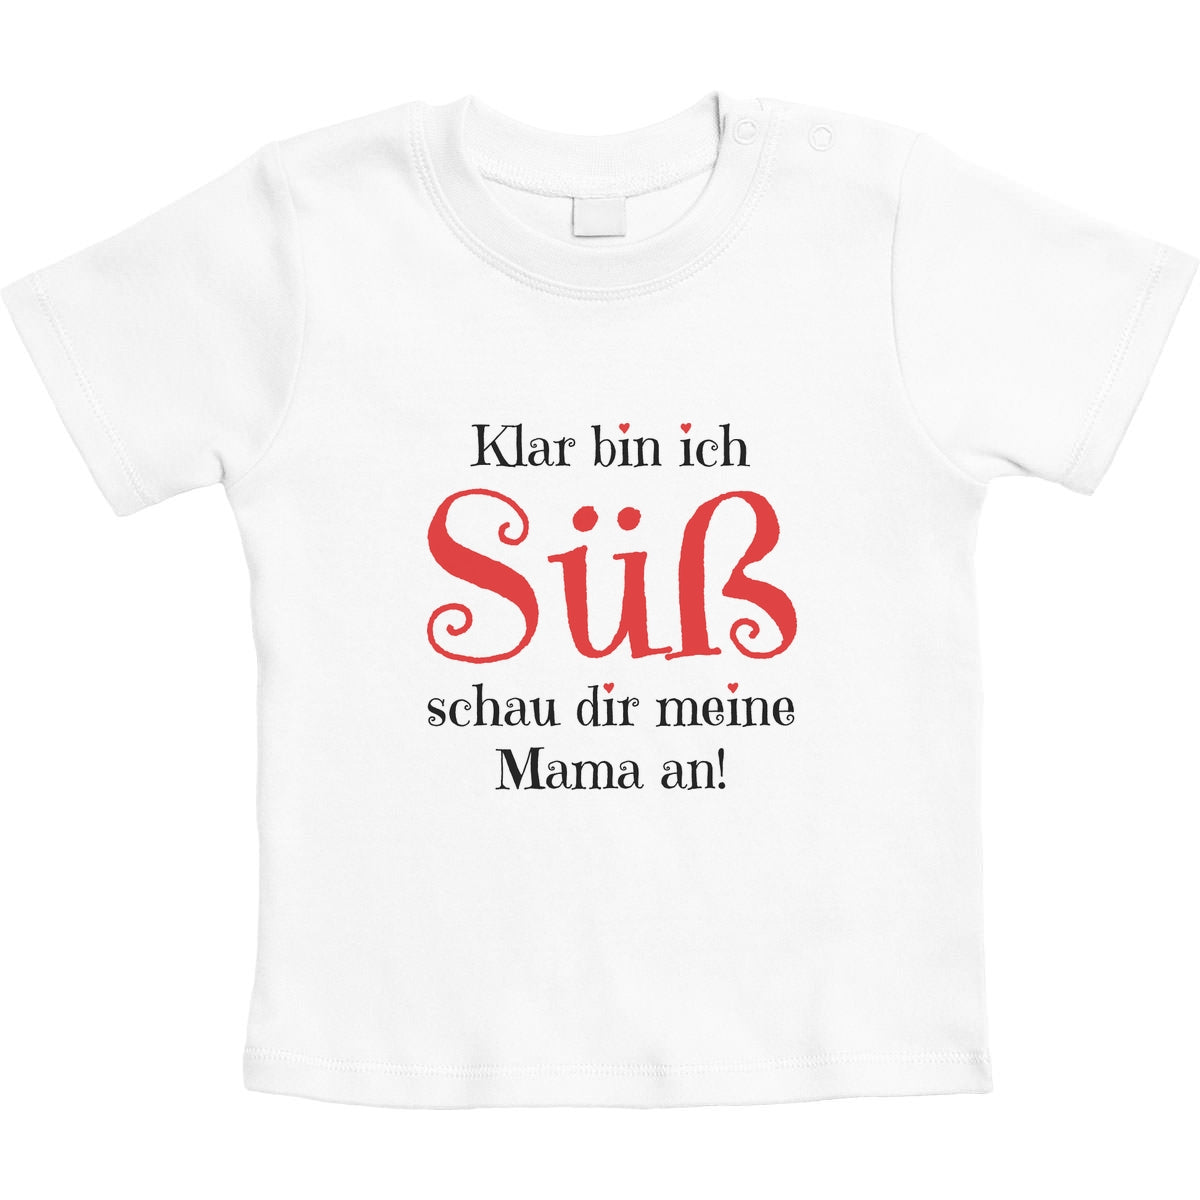 Mädchen - Klar bin ich Süß schau dir meine Mama an Unisex Baby T-Shirt Gr. 66-93